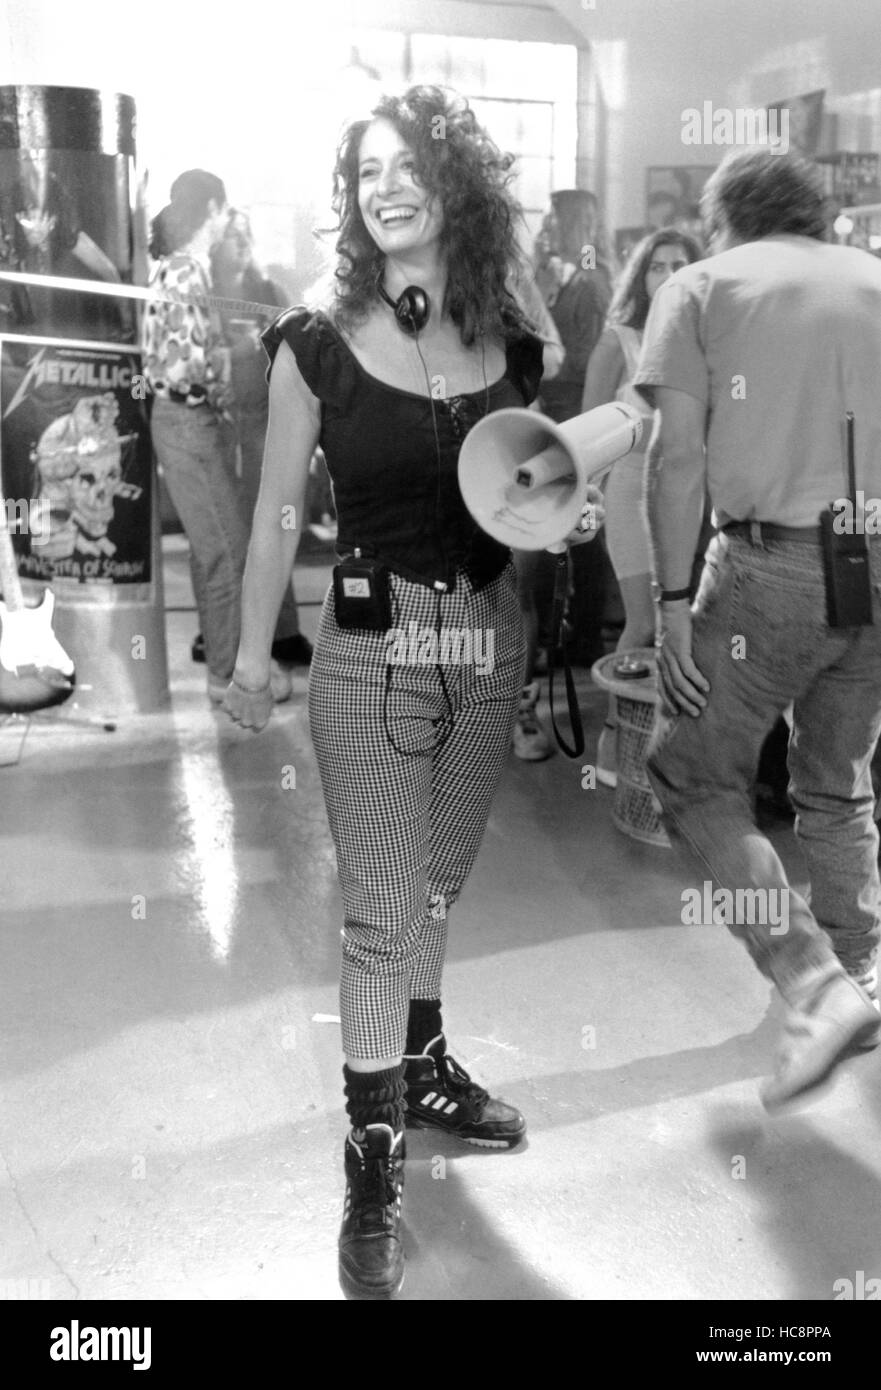 WAYNE'S WORLD de Penelope Spheeris, directeur, sur-ensemble, 1992, (c) Paramount Pictures / courtesy : Everett Collection Banque D'Images